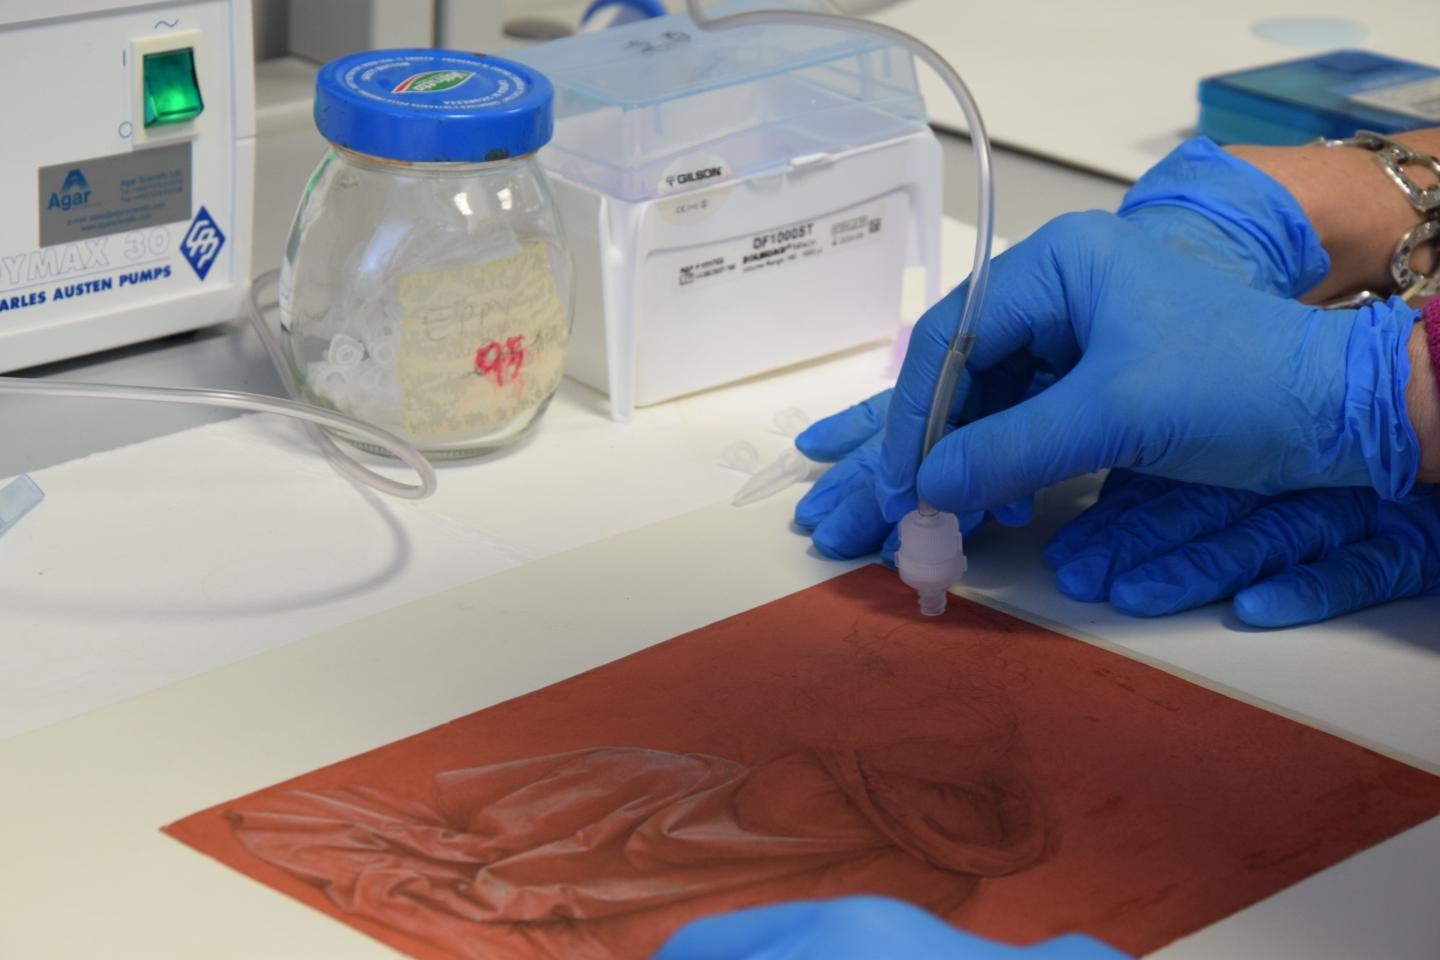 Cientistas identificam rastros de bactérias, fungos e DNA humano nas obras de Da Vinci (Foto: Reprodução/FrontiersinMicrobiology)